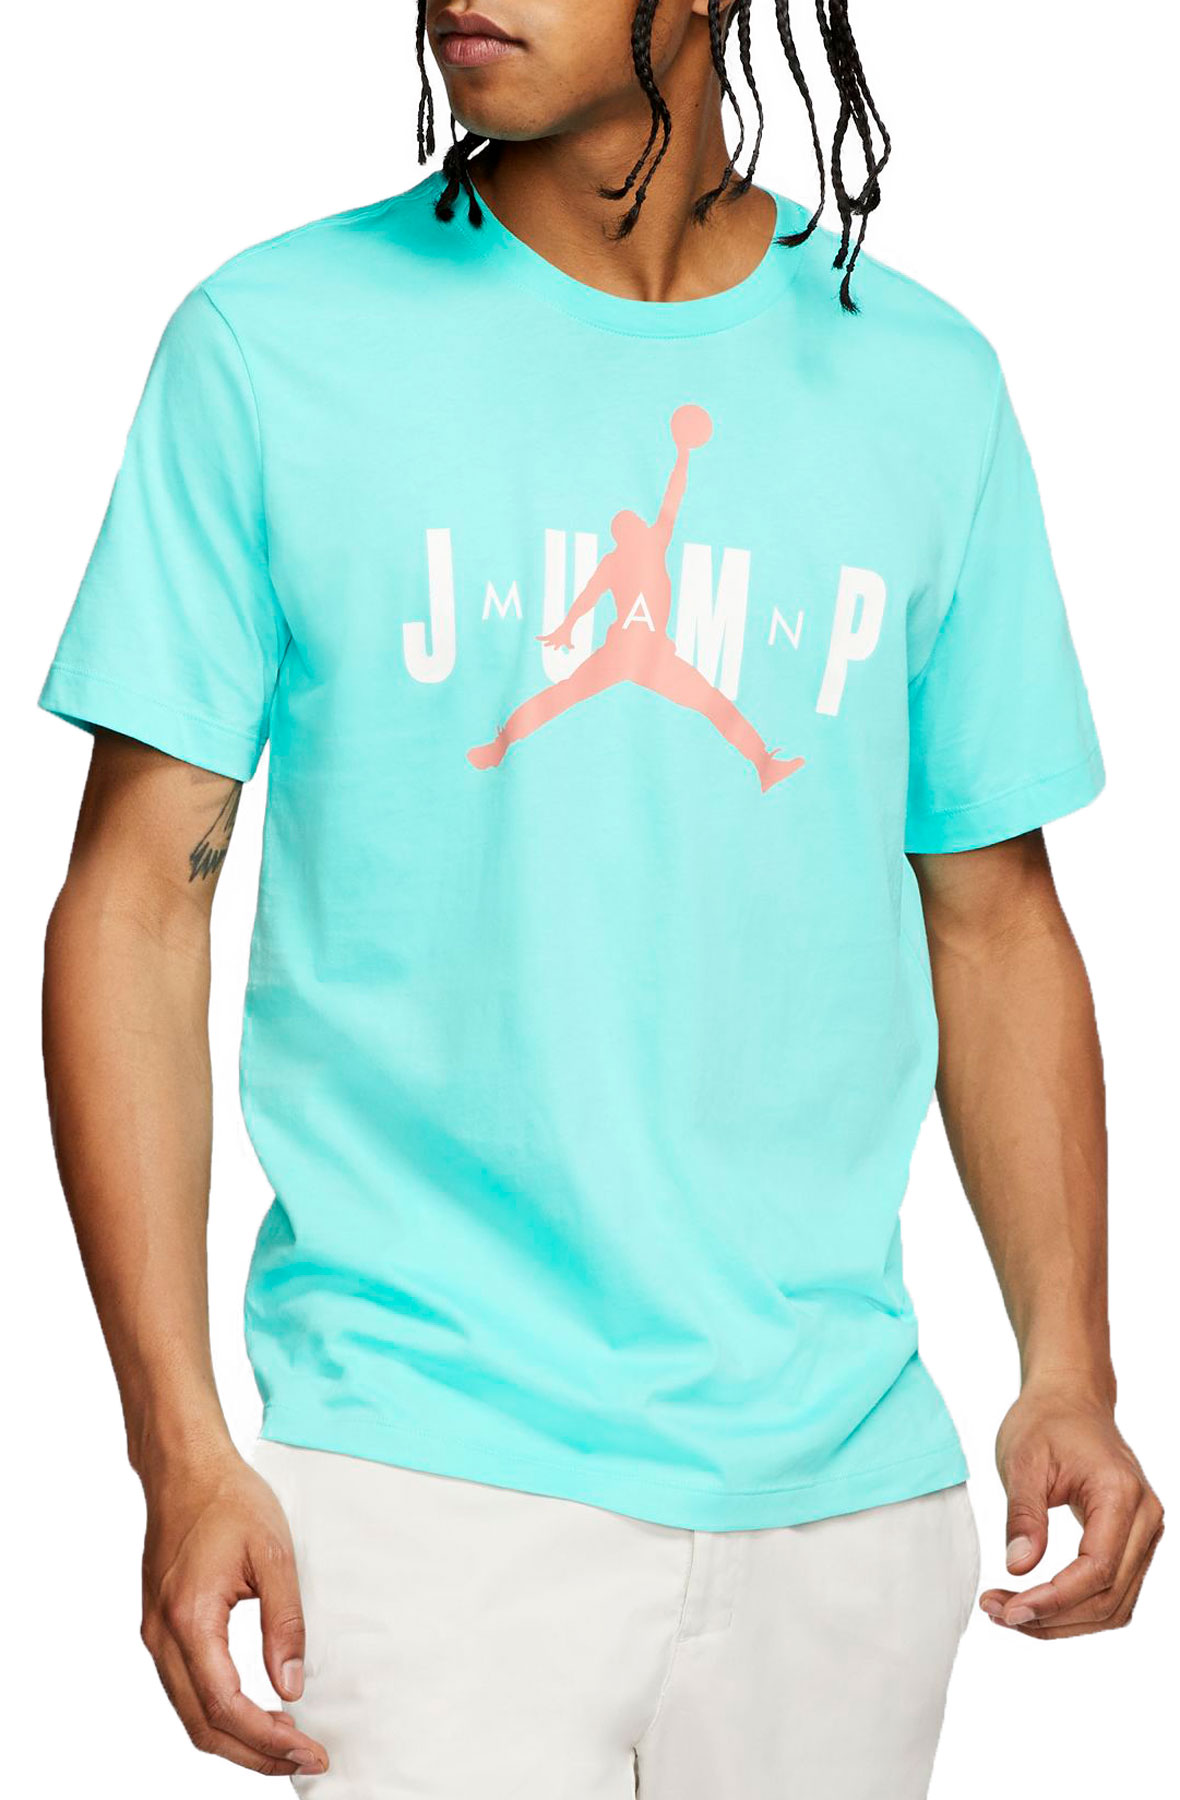 Jumpman T-Shirt Light Aqua/Pink Quartz